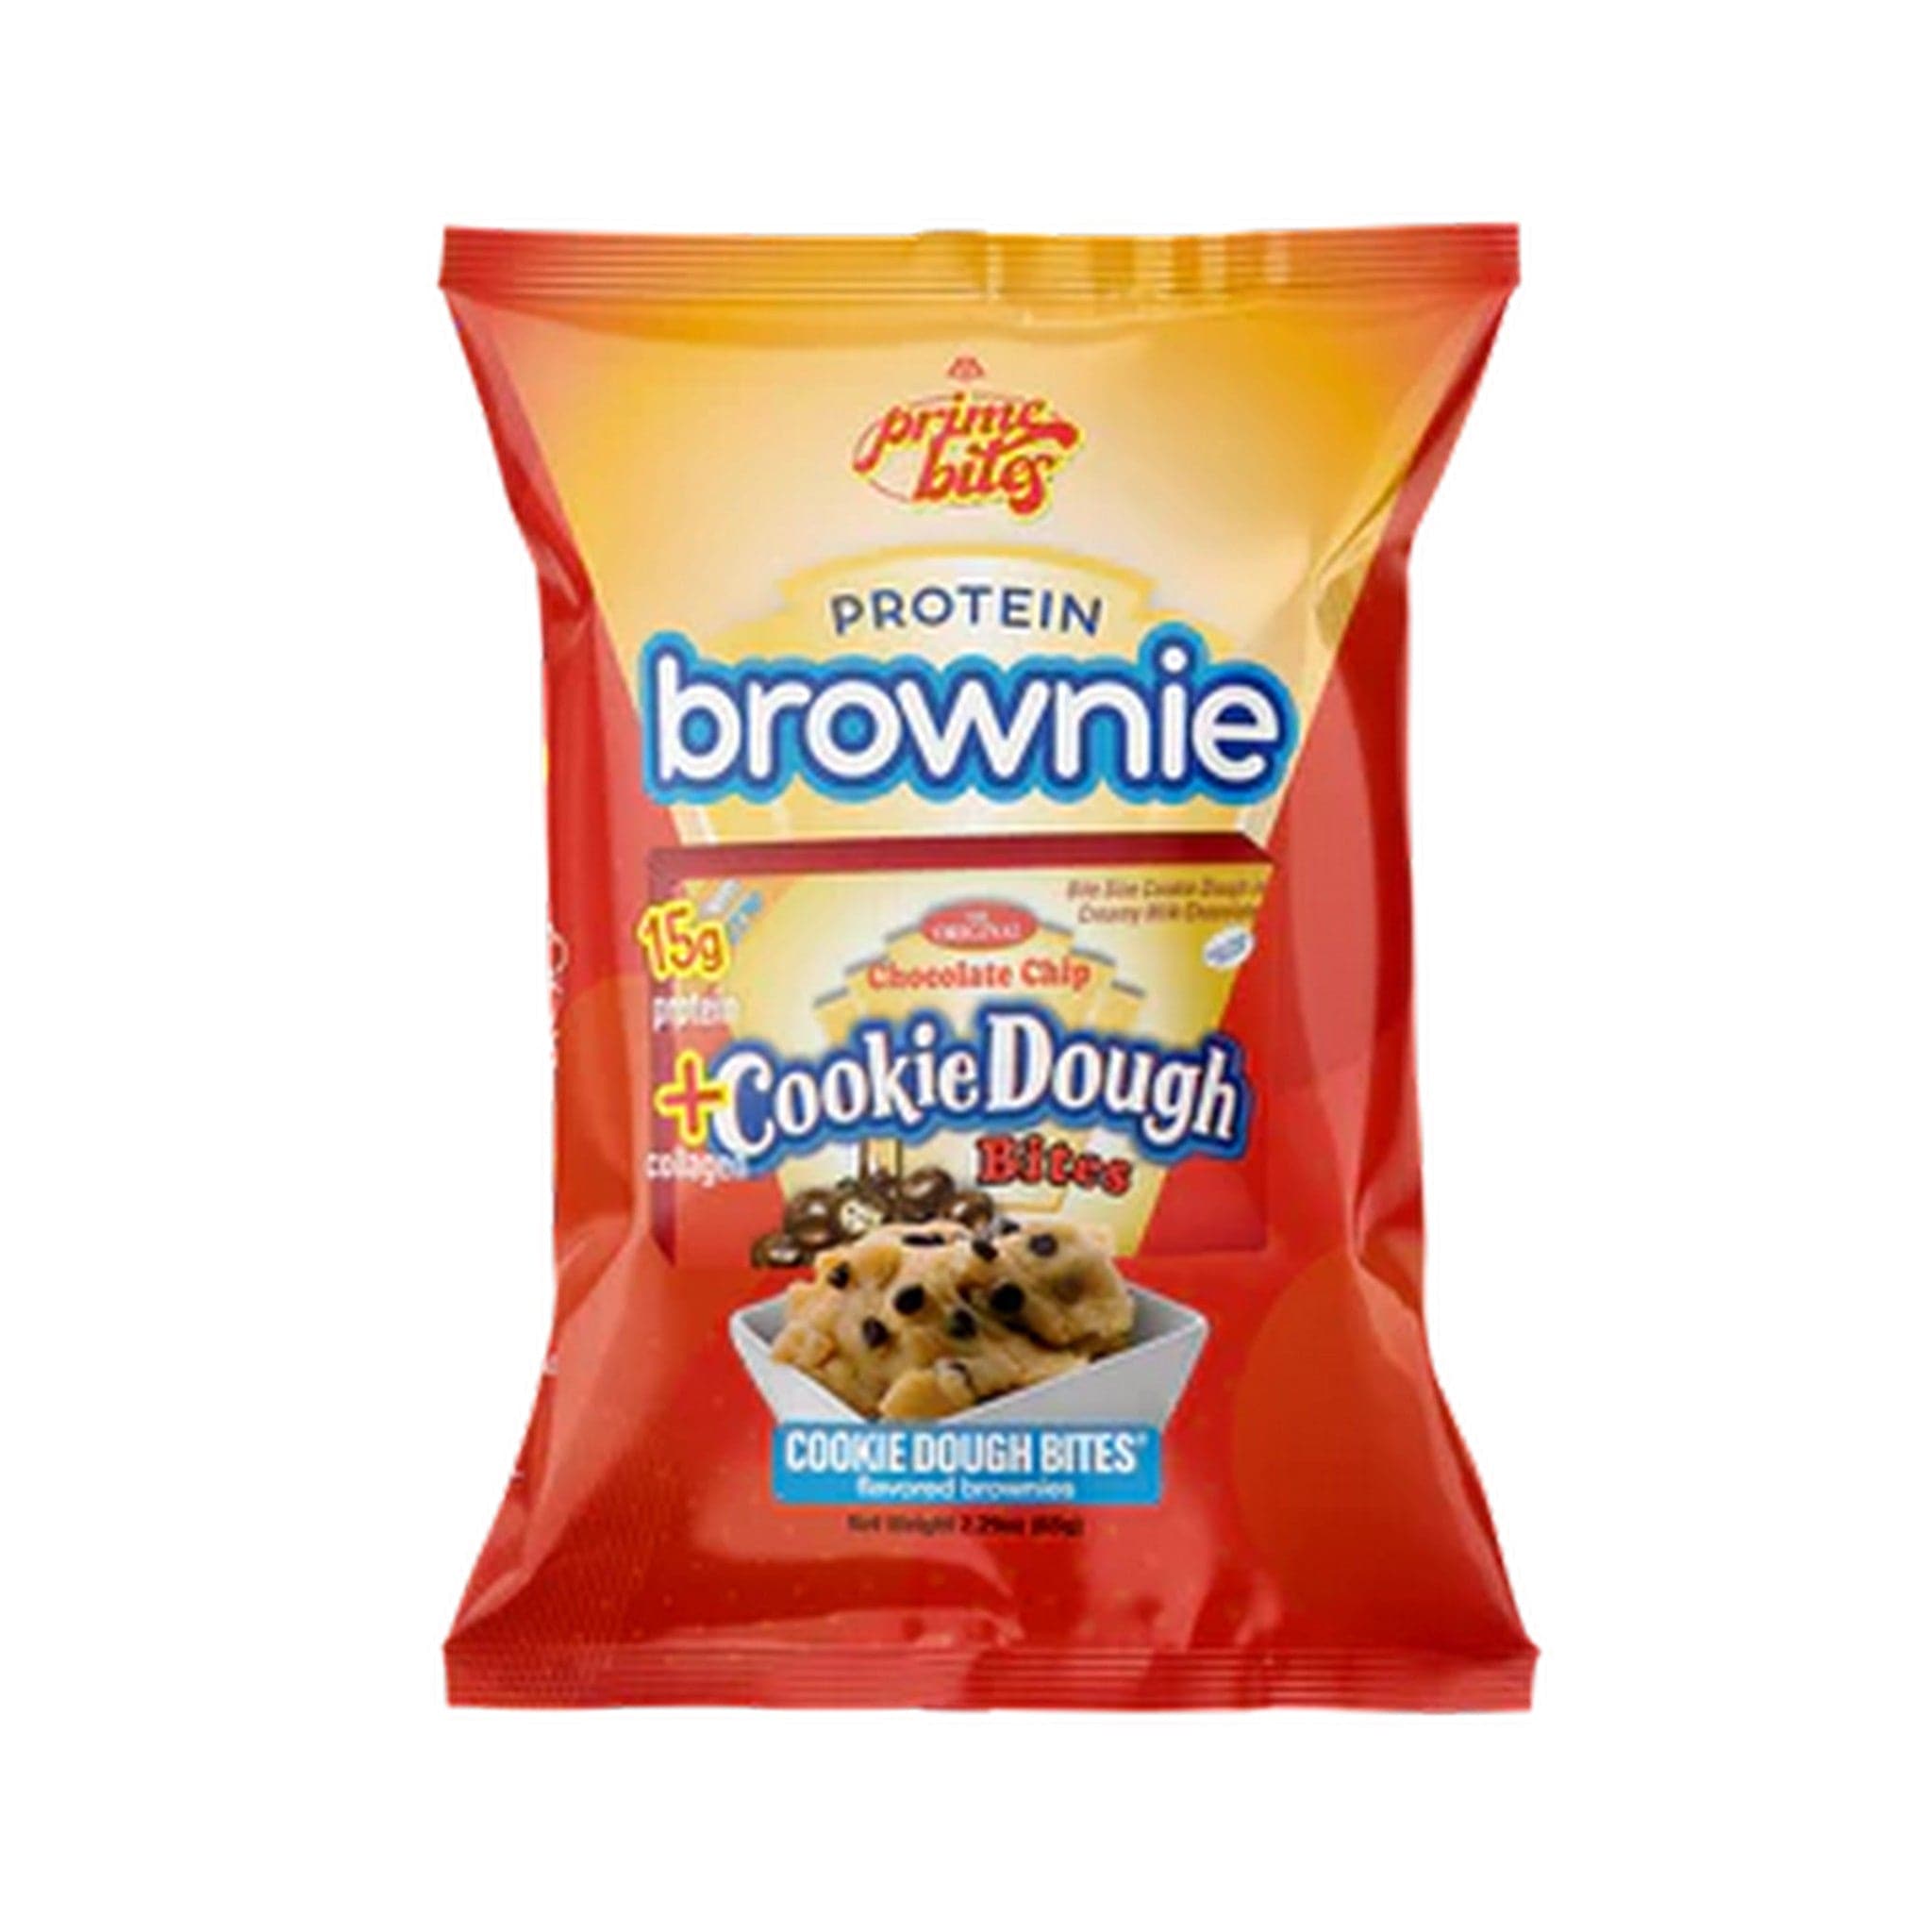 Alpha Prime Prime Bites Protein Brownie single